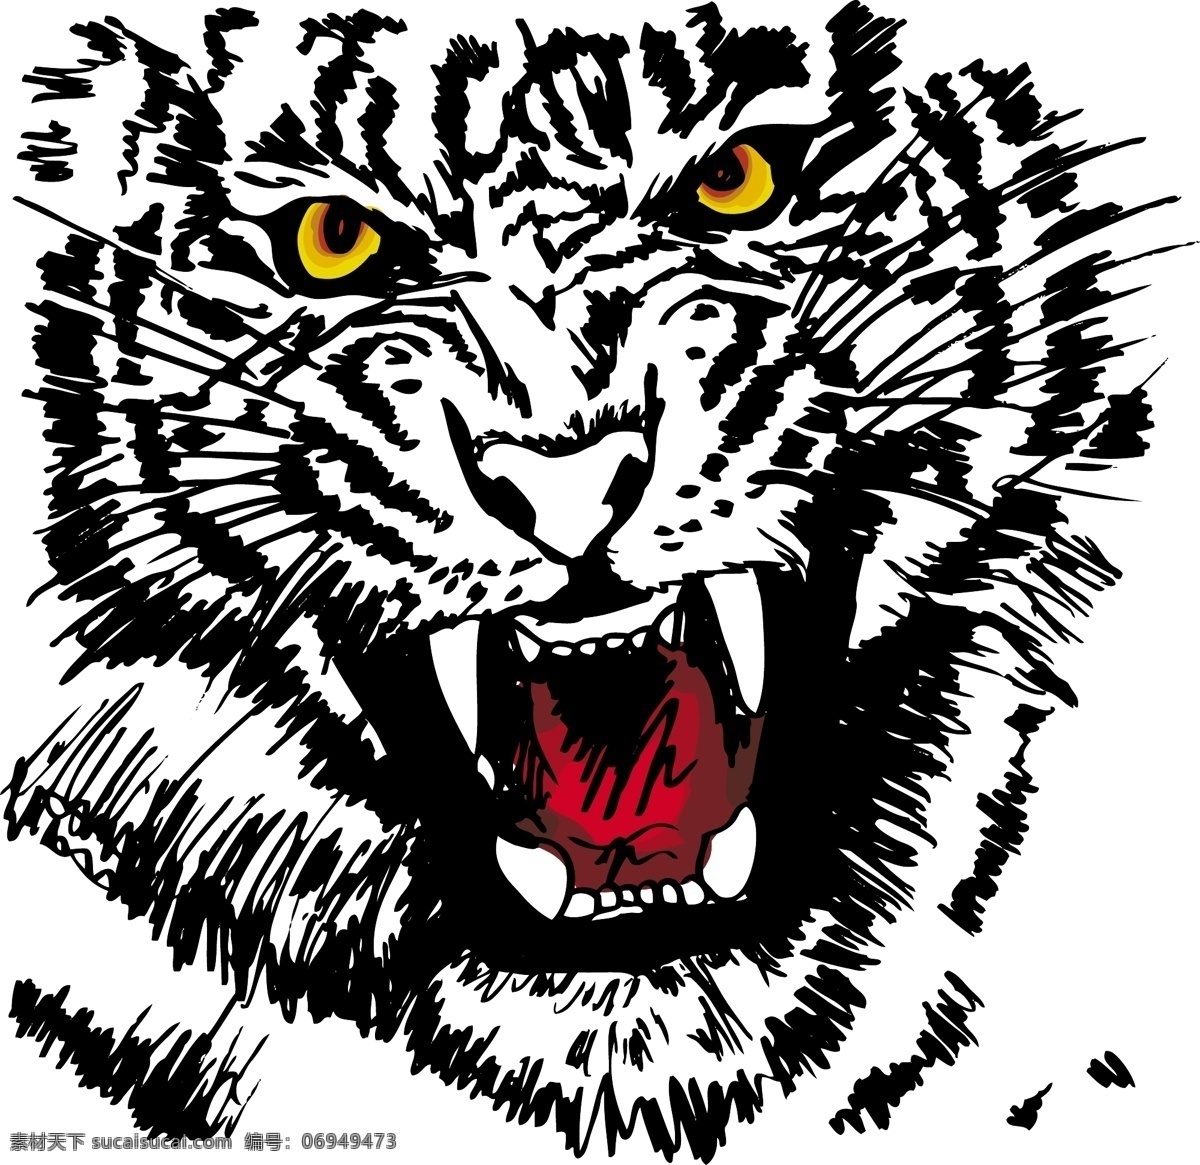 凶猛 老虎 素描 动物 动物素材 动物插画 动物素描 老虎素材 矢量素材 陆地动物 生物世界 白色